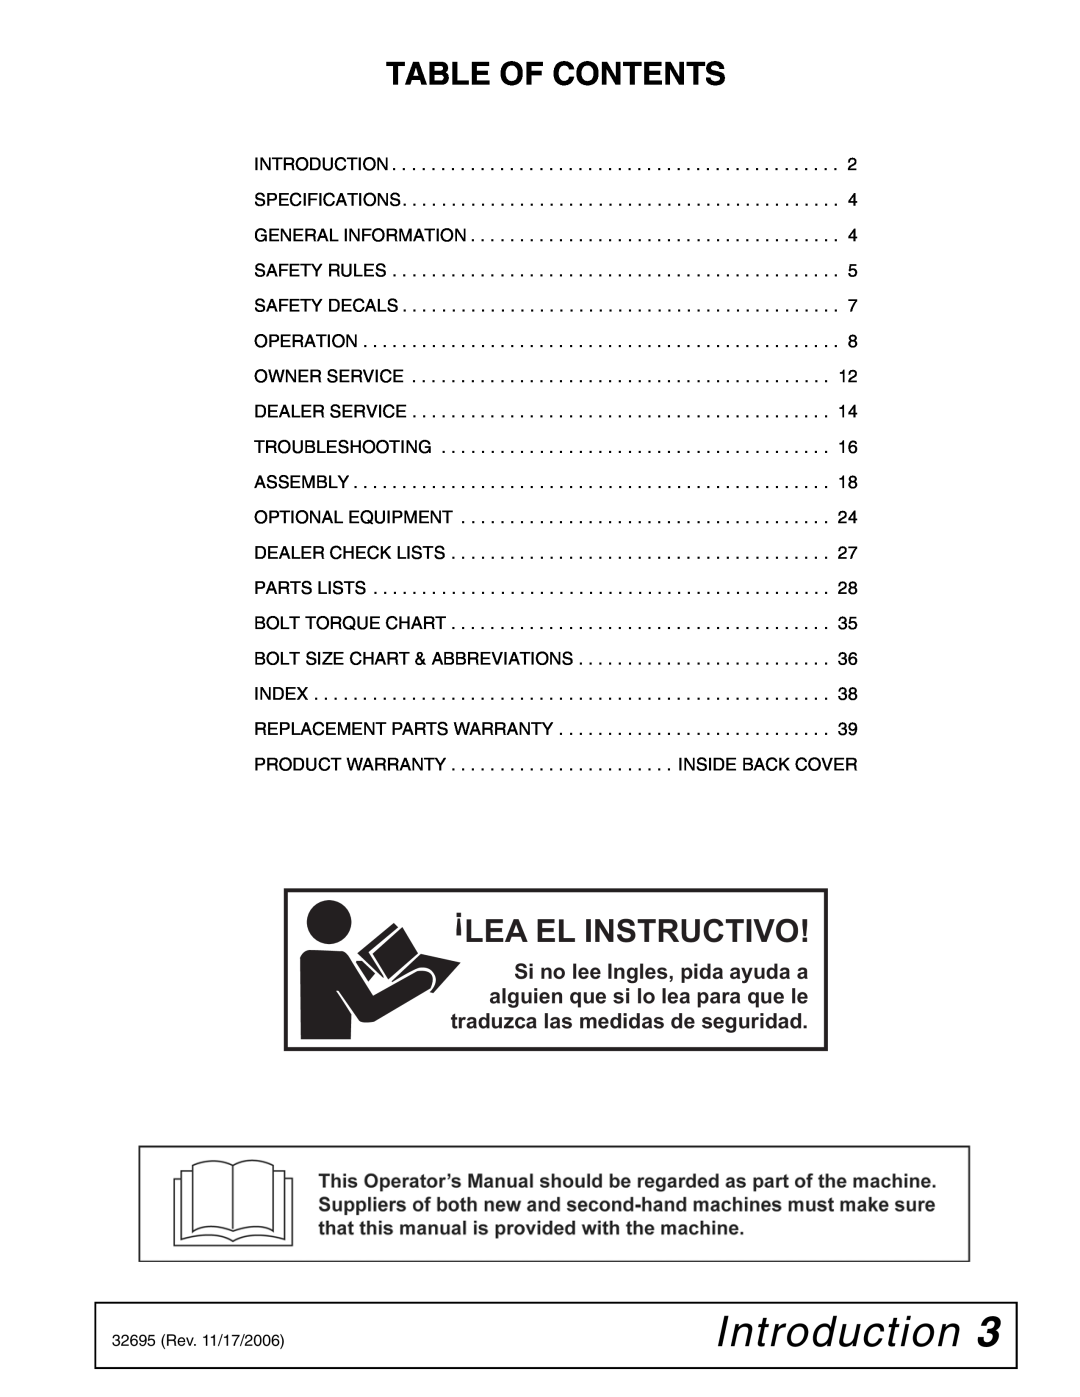 Woods Equipment L306 K50 manual Introduction, Table Of Contents, Lea El Instructivo 